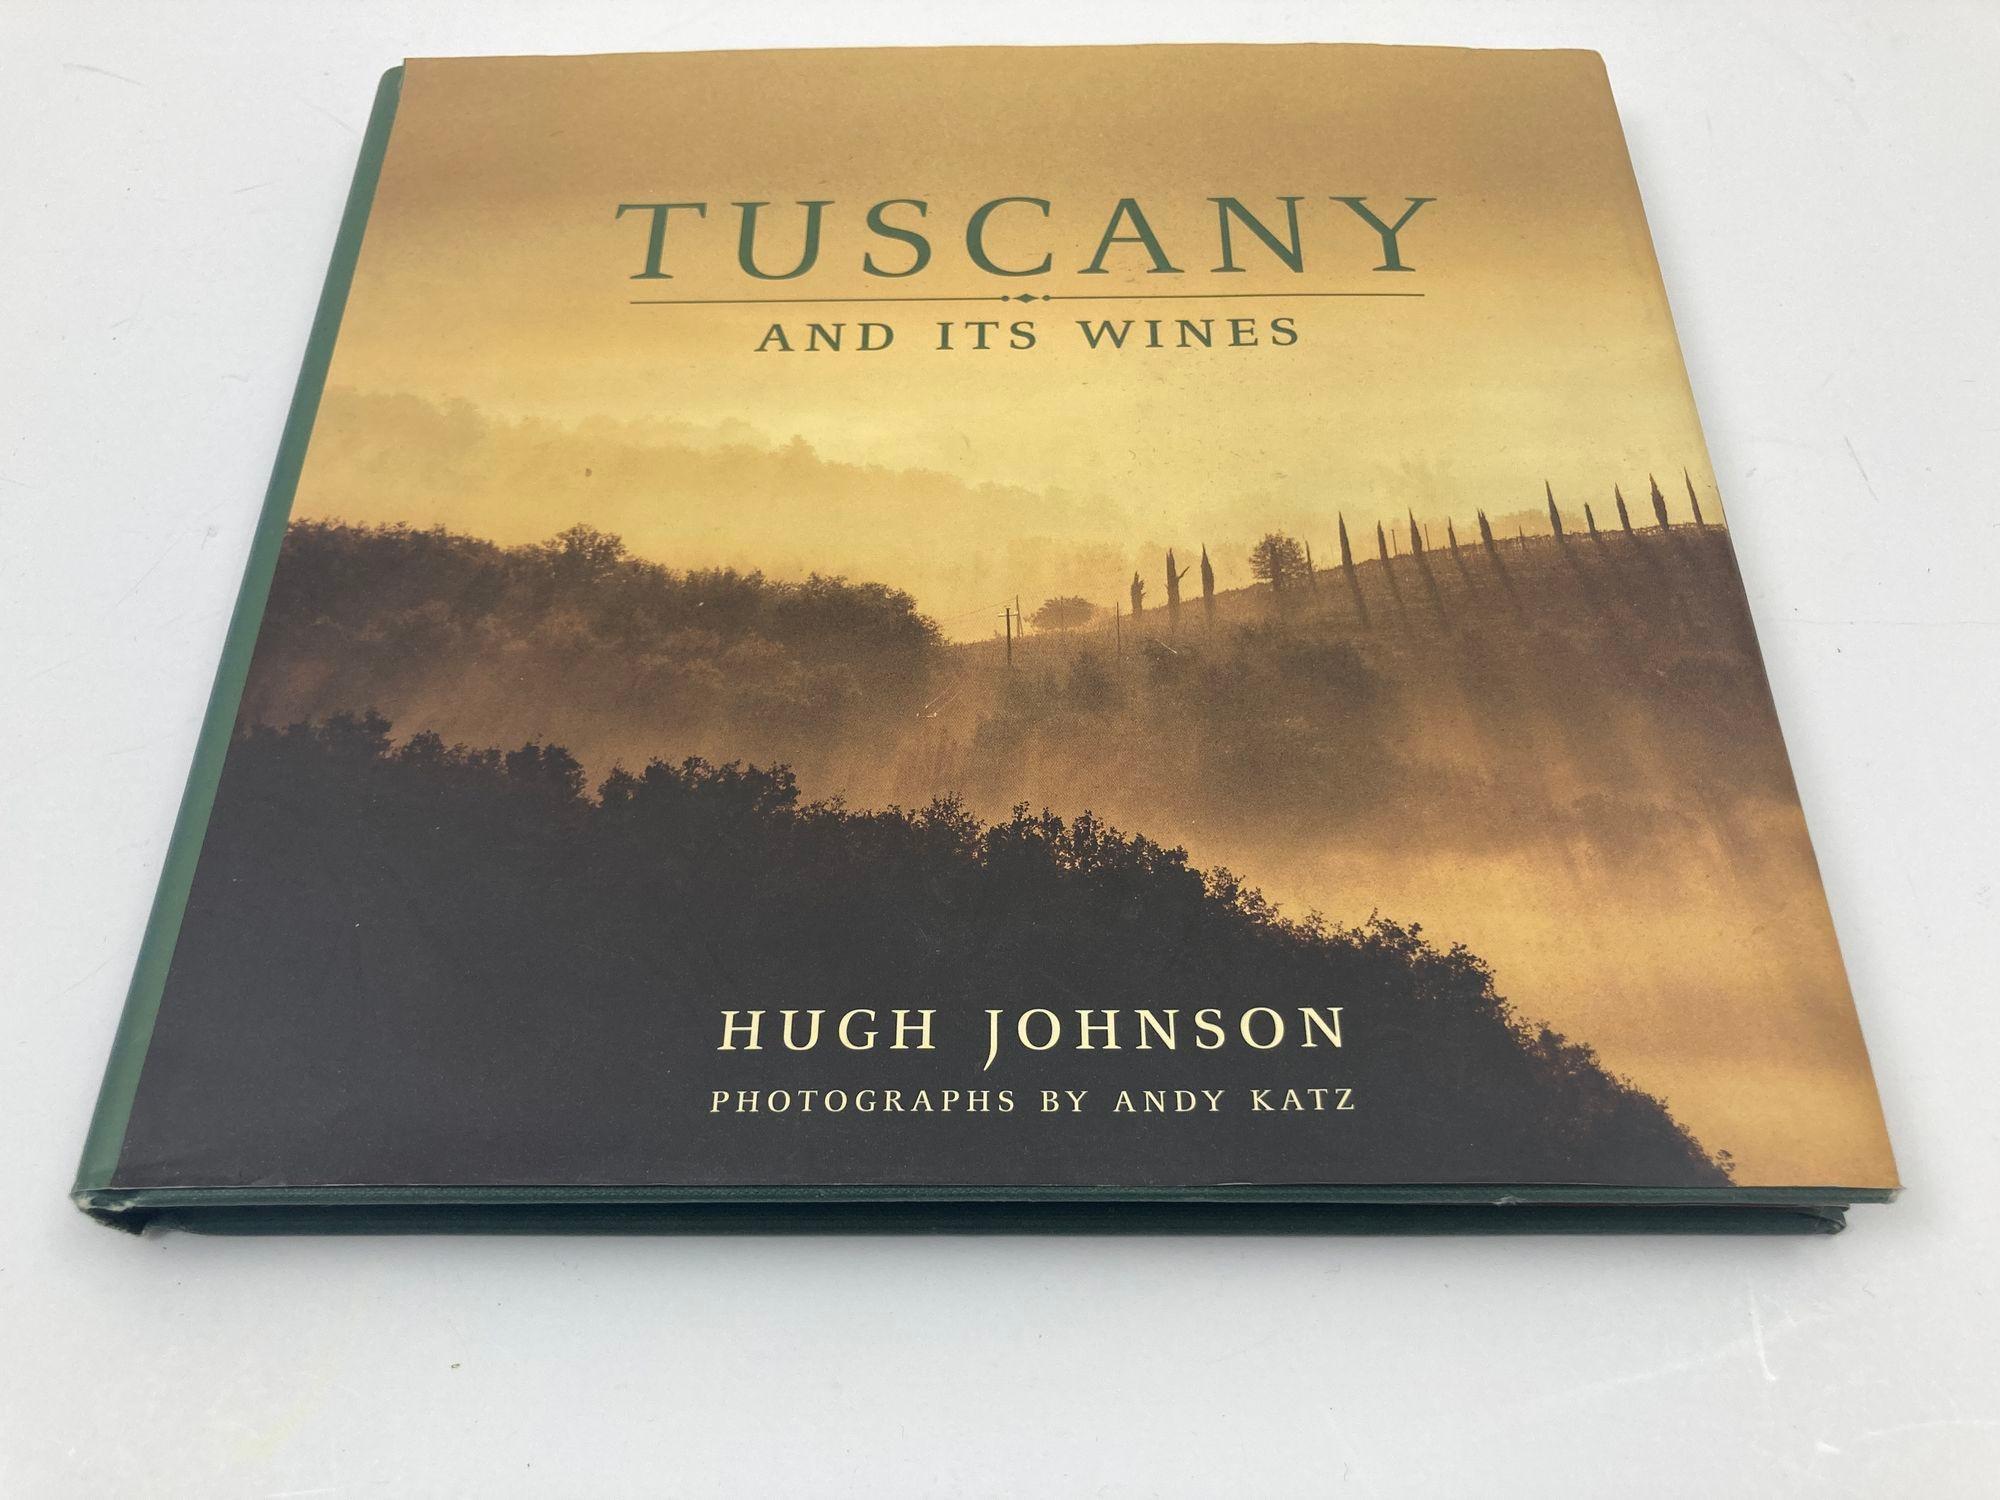 Tuscany and Its Wines Par Hughes Johnson livre à couverture rigide 2000.
Rejoignez Hughes, écrivain du vin de renommée mondiale, dans ce magnifique hommage à la Toscane.
Il découvre son histoire, ses paysages, ses villes, ses villages, ses